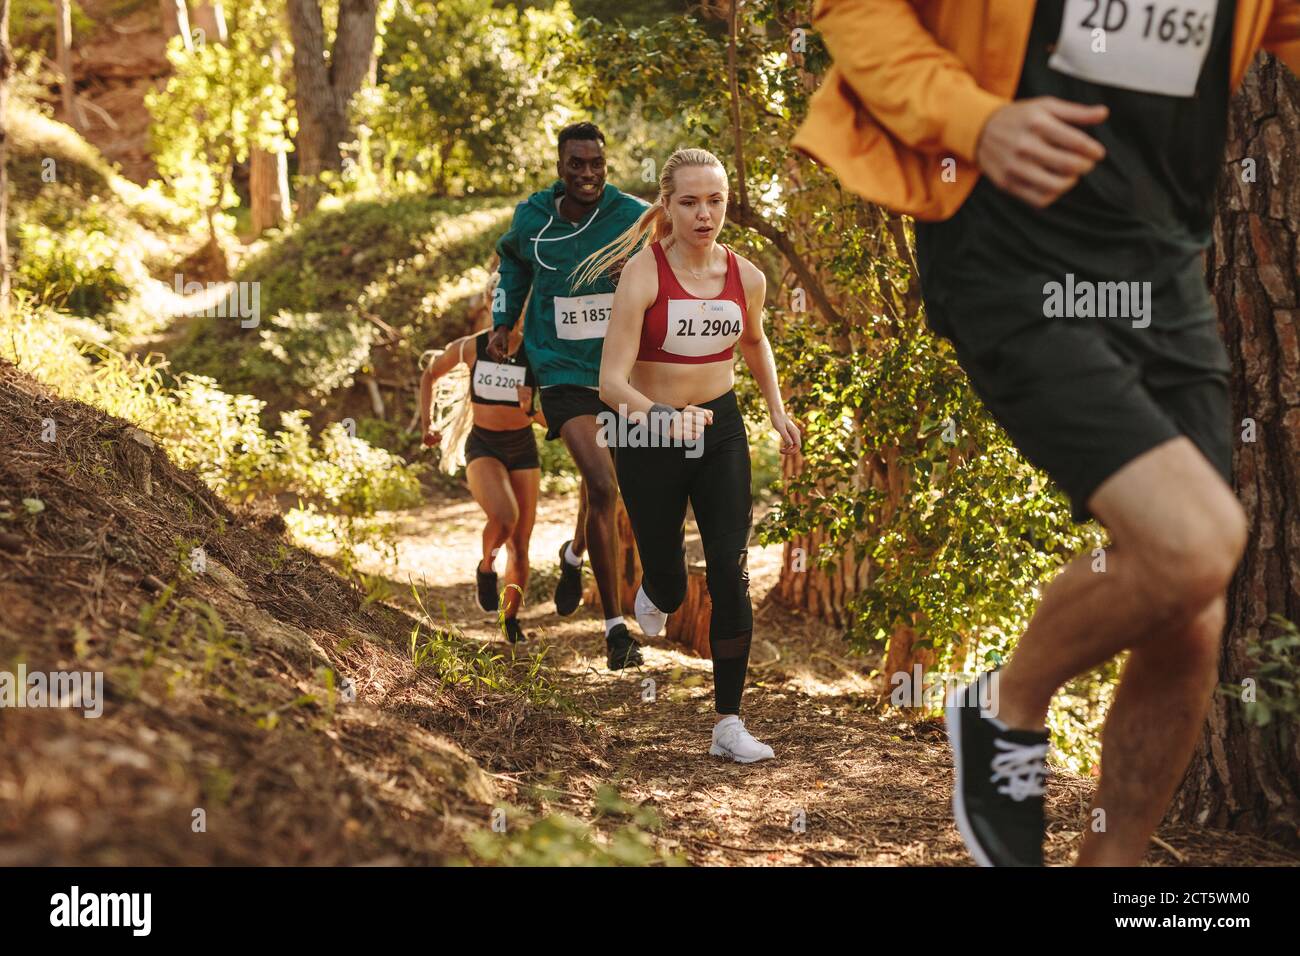 Grupo de atletas corredores correr camino cuesta arriba. Hombres y mujeres corriendo una carrera de maratón. Foto de stock